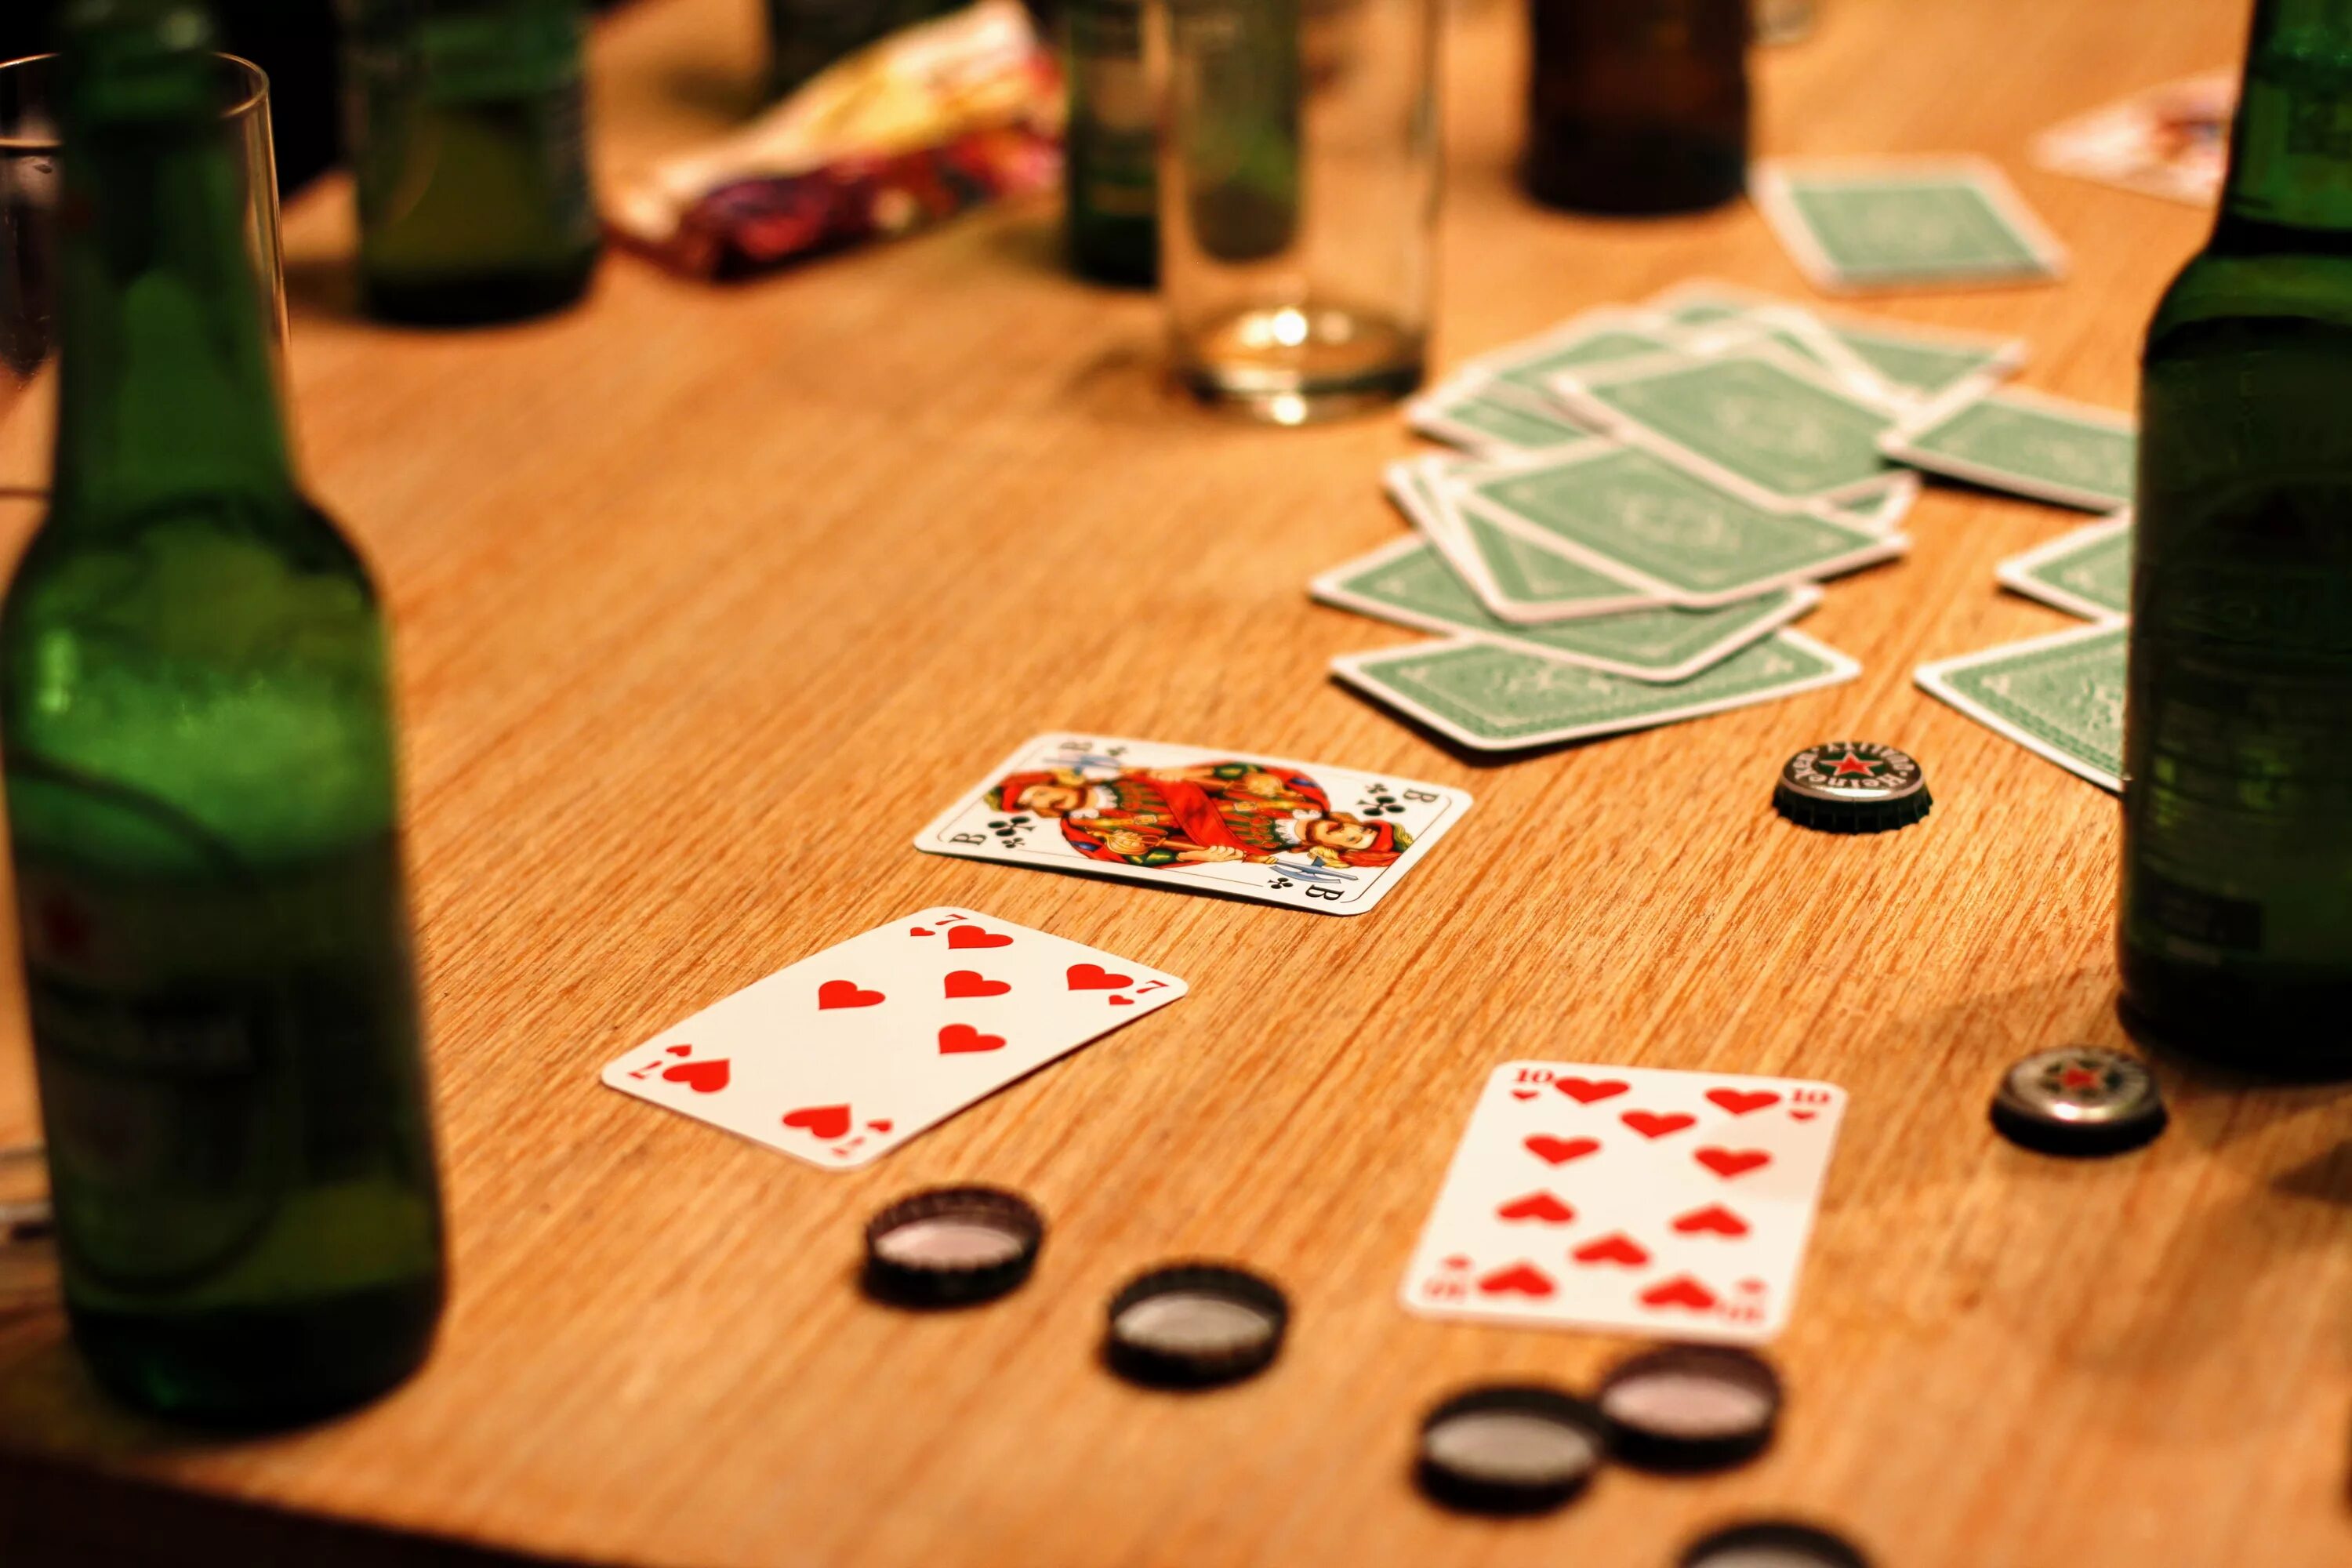 Cards playing games. Карточный стол. Игра в карты. Азартная карточная игра. Карты выпивка.